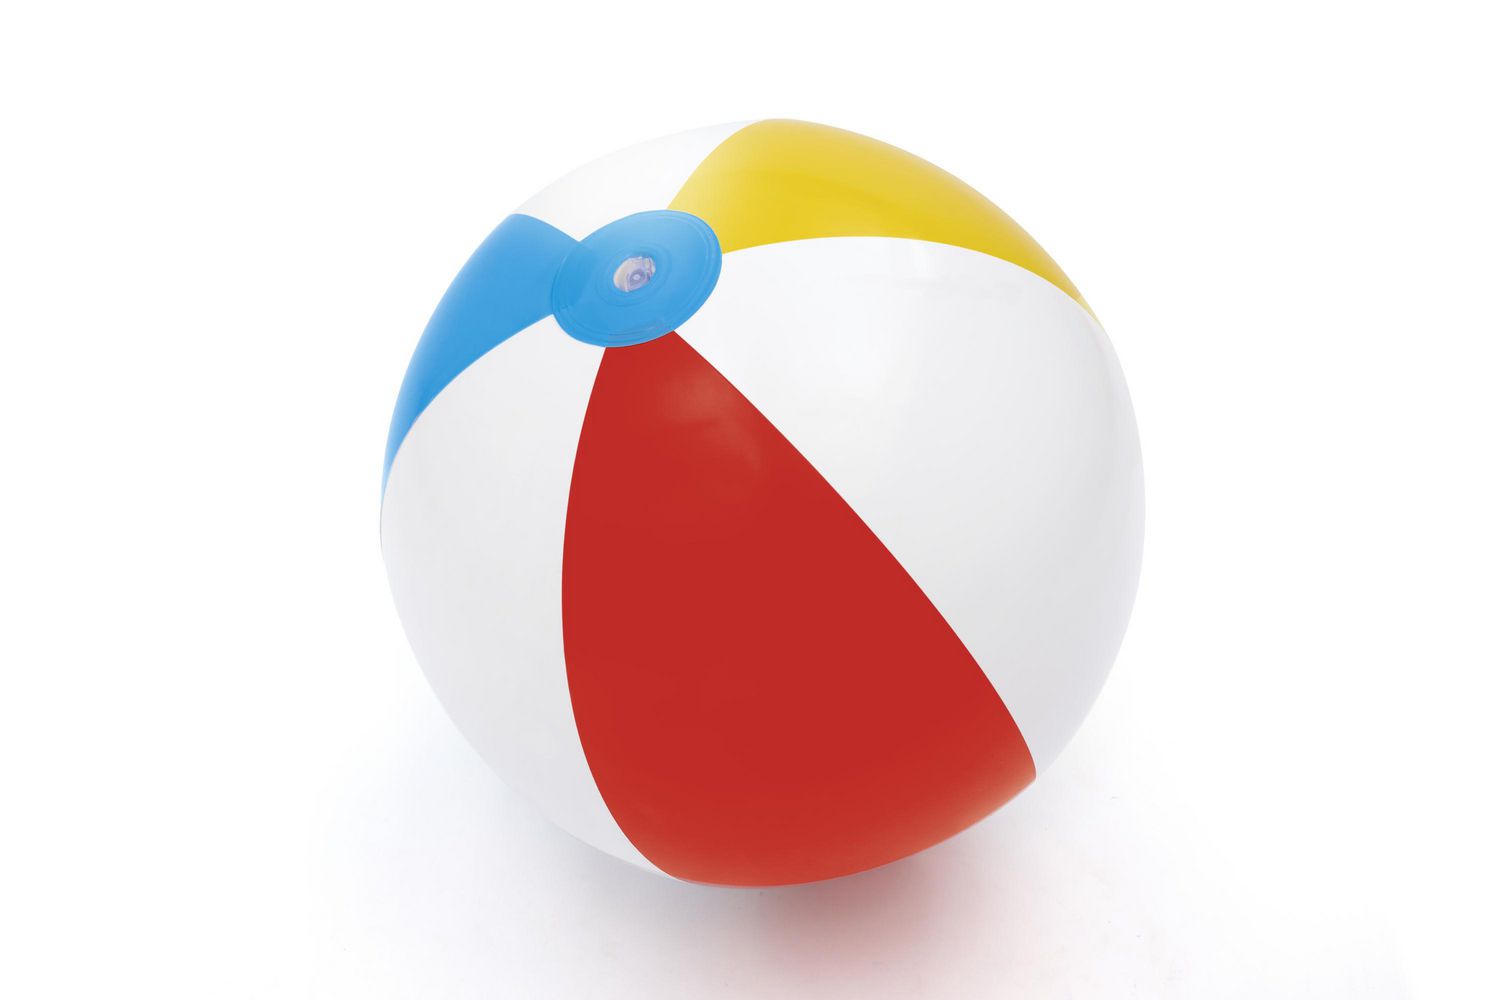 Ballon plage - 2 tailles – La picorette